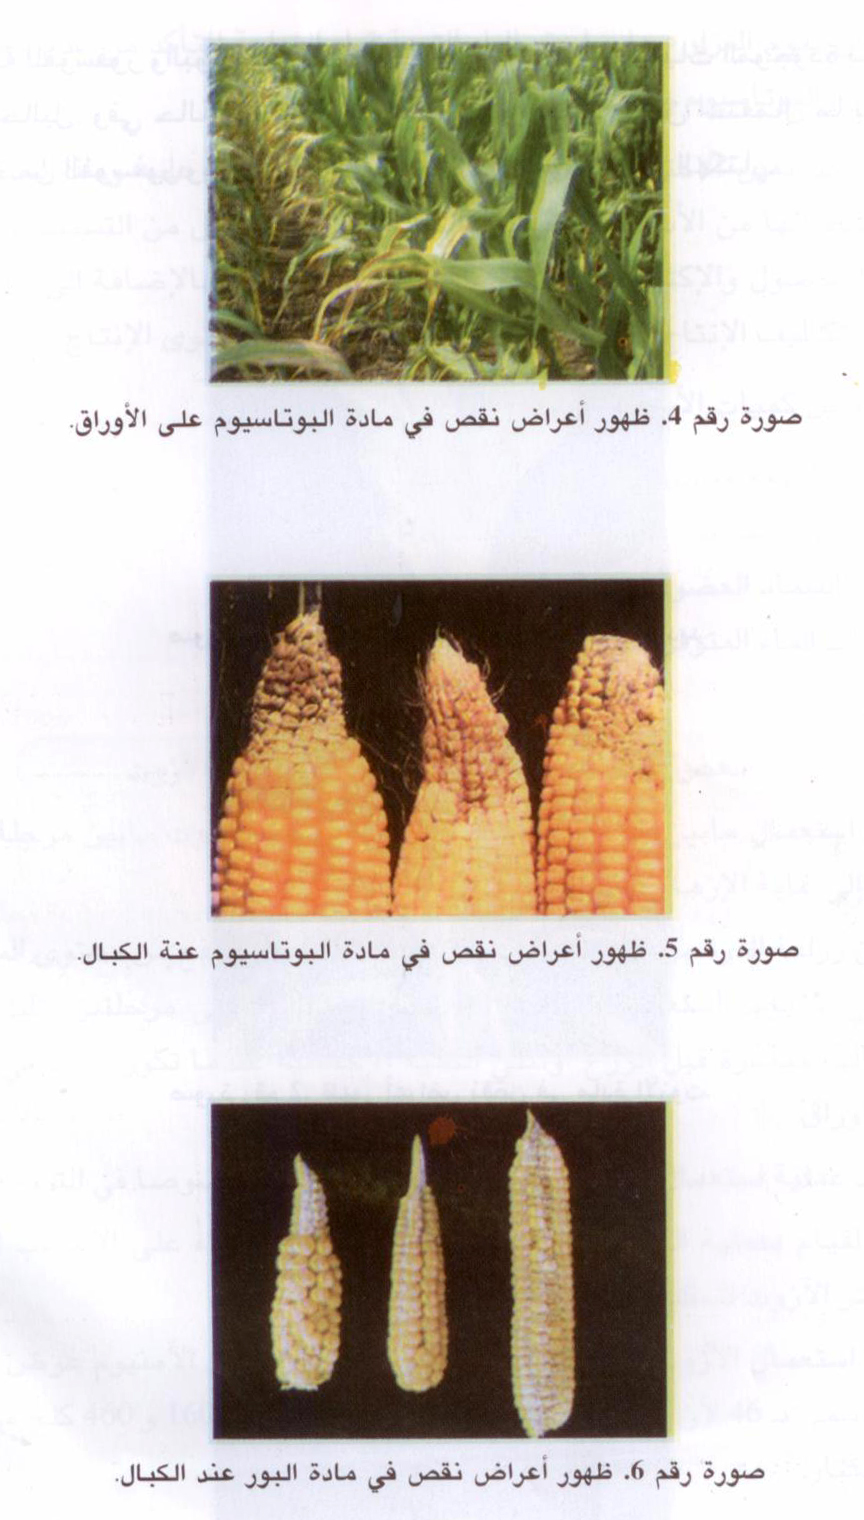 تقنيات زراعة الذرة المهجنة لإنتاج الحبوب و للسلوجة. ( الجزء الثاني )